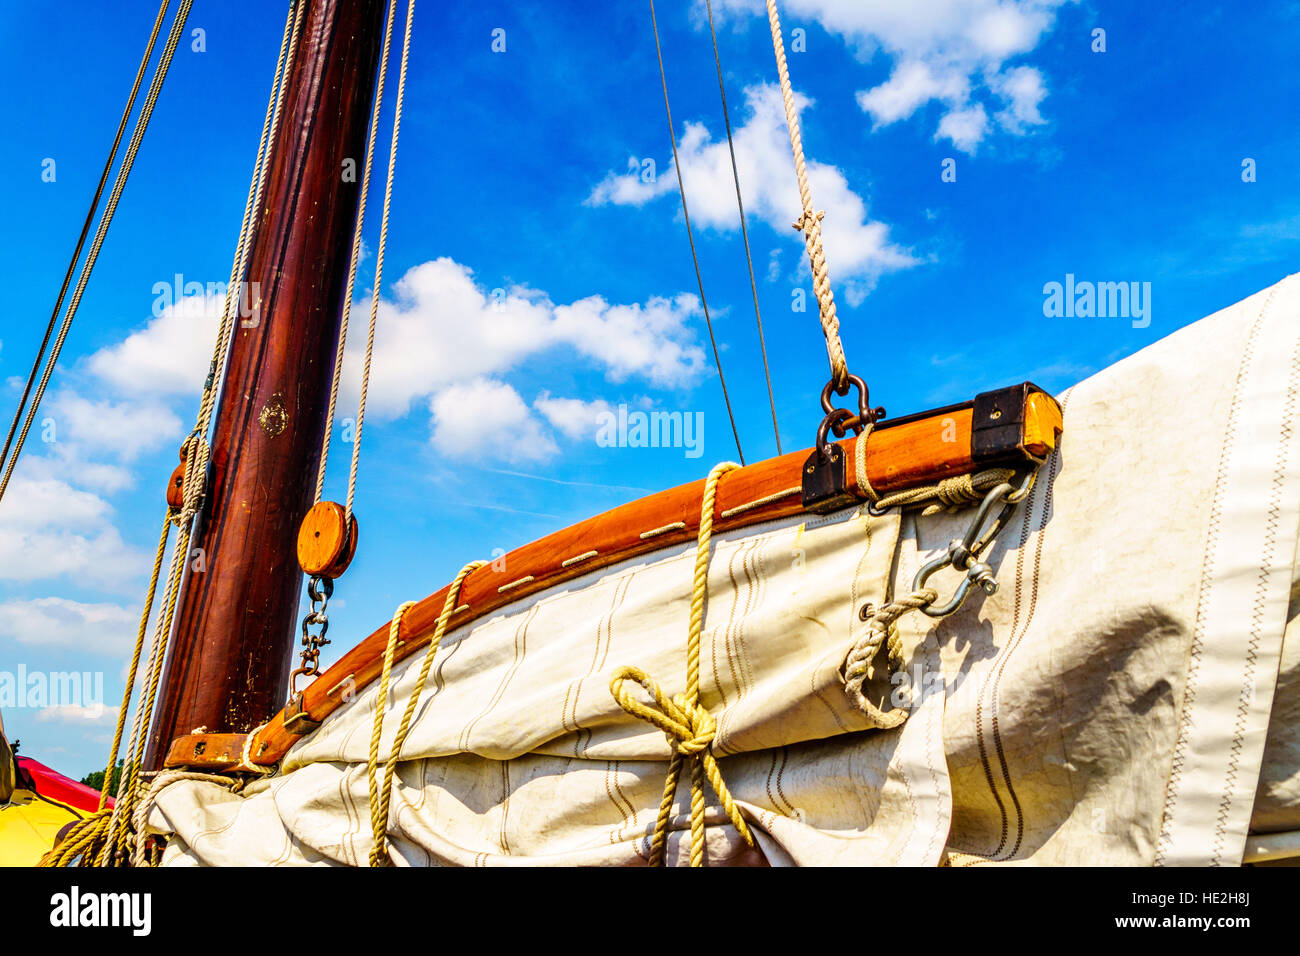 Mast, Ausleger, Rigg und Segel eines historischen Botter Bootes im Hafen Bunschoten-Spakenburg in den Niederlanden Stockfoto